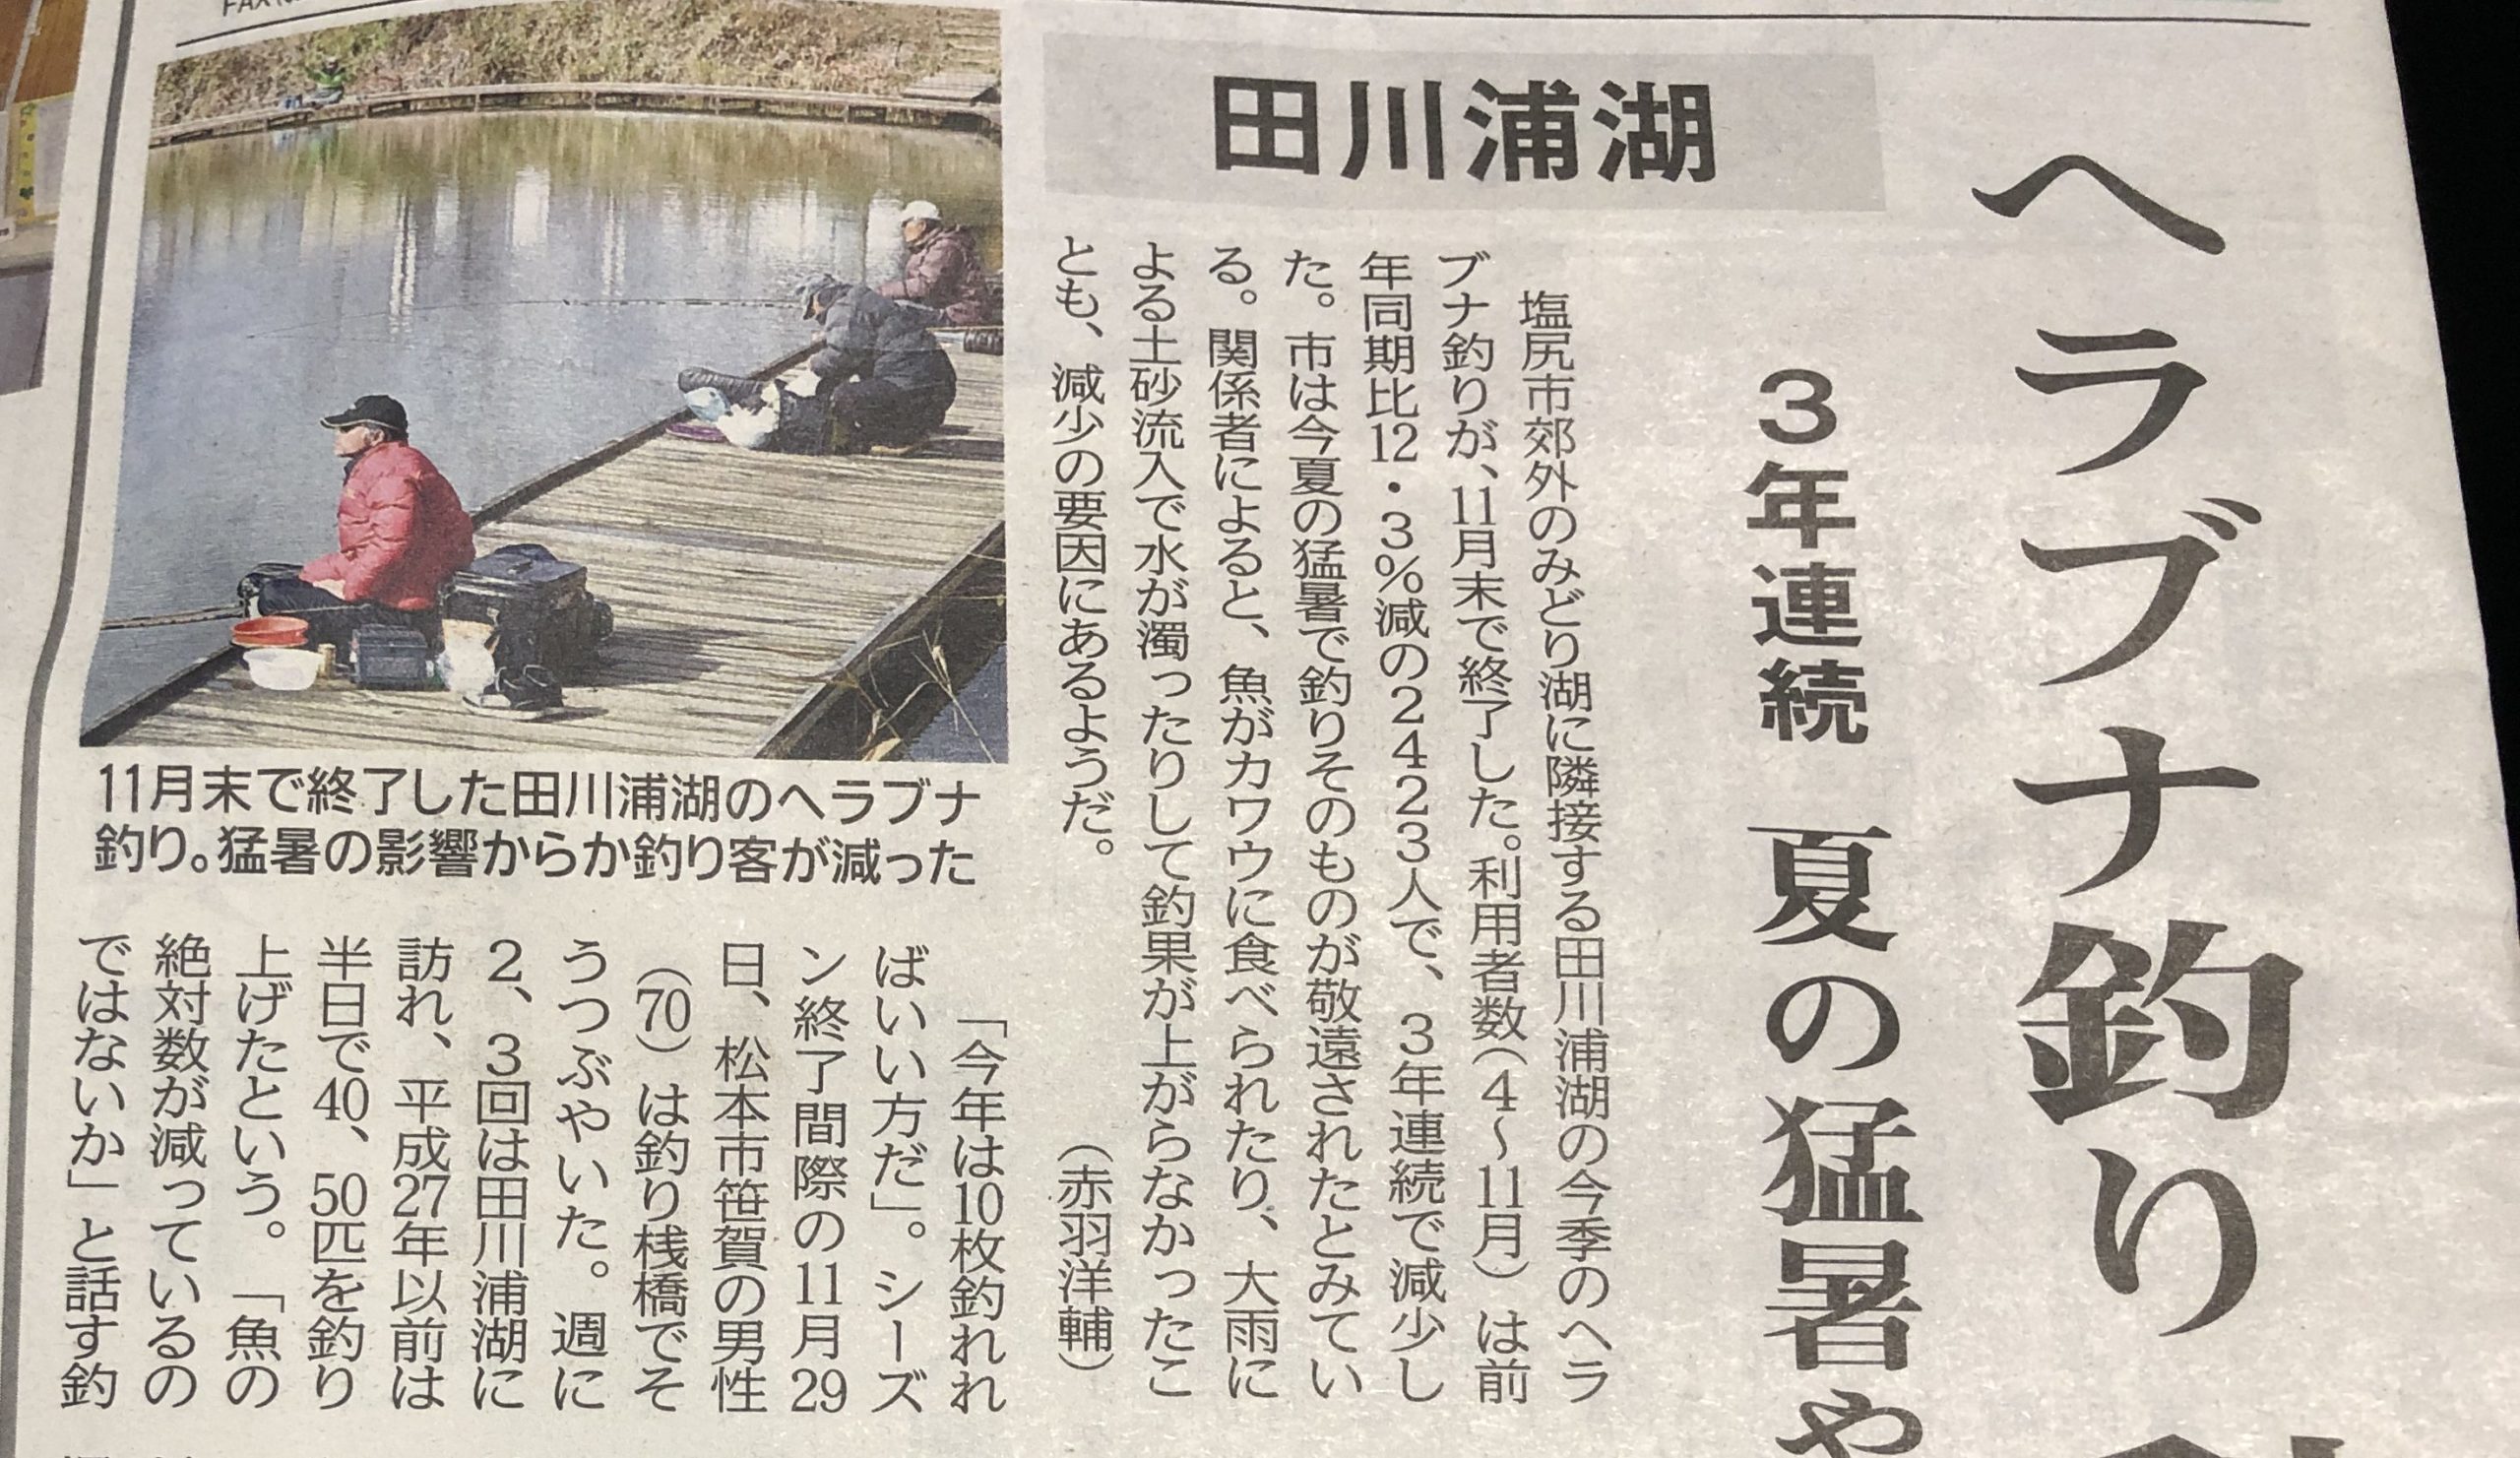 田川浦湖のヘラブナ釣り師が減少傾向という記事